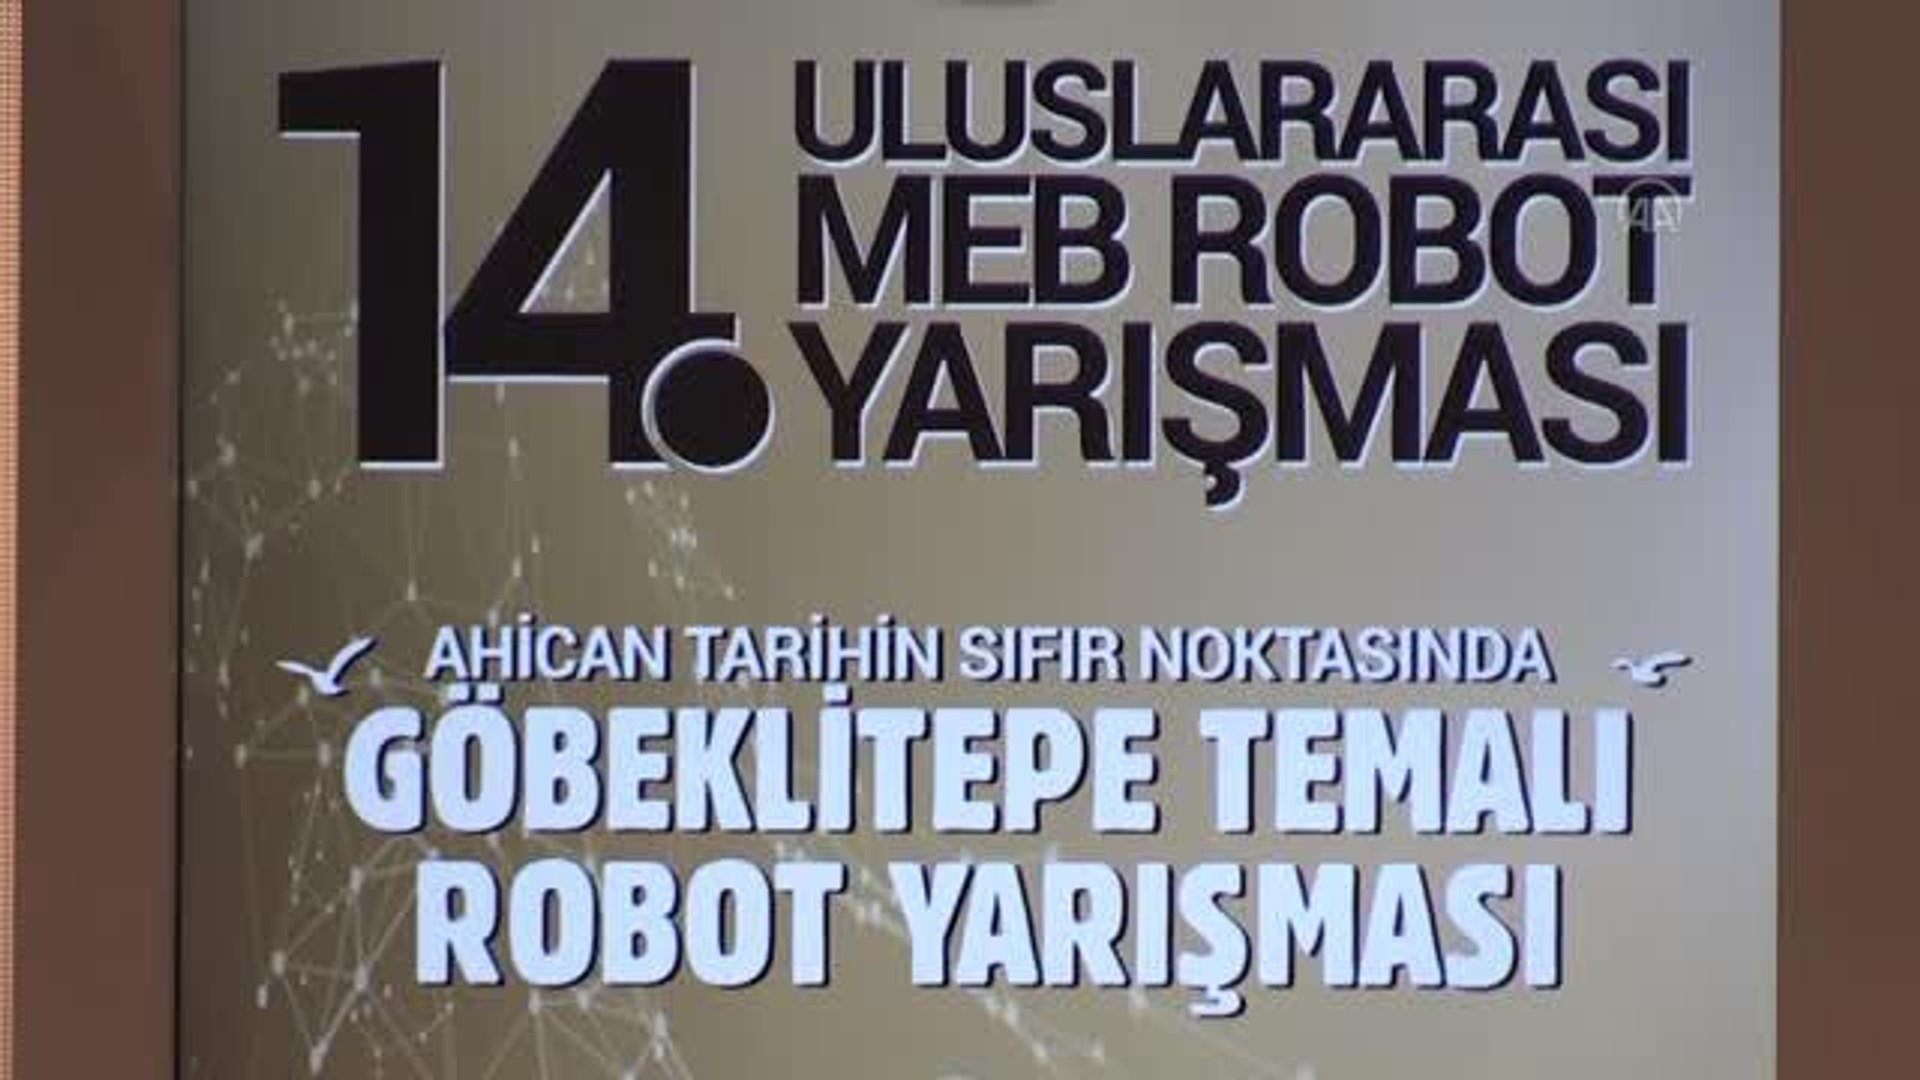 ŞANLIURFA - 14. Uluslararası MEB Robot Yarışması başladı - Dailymotion Video